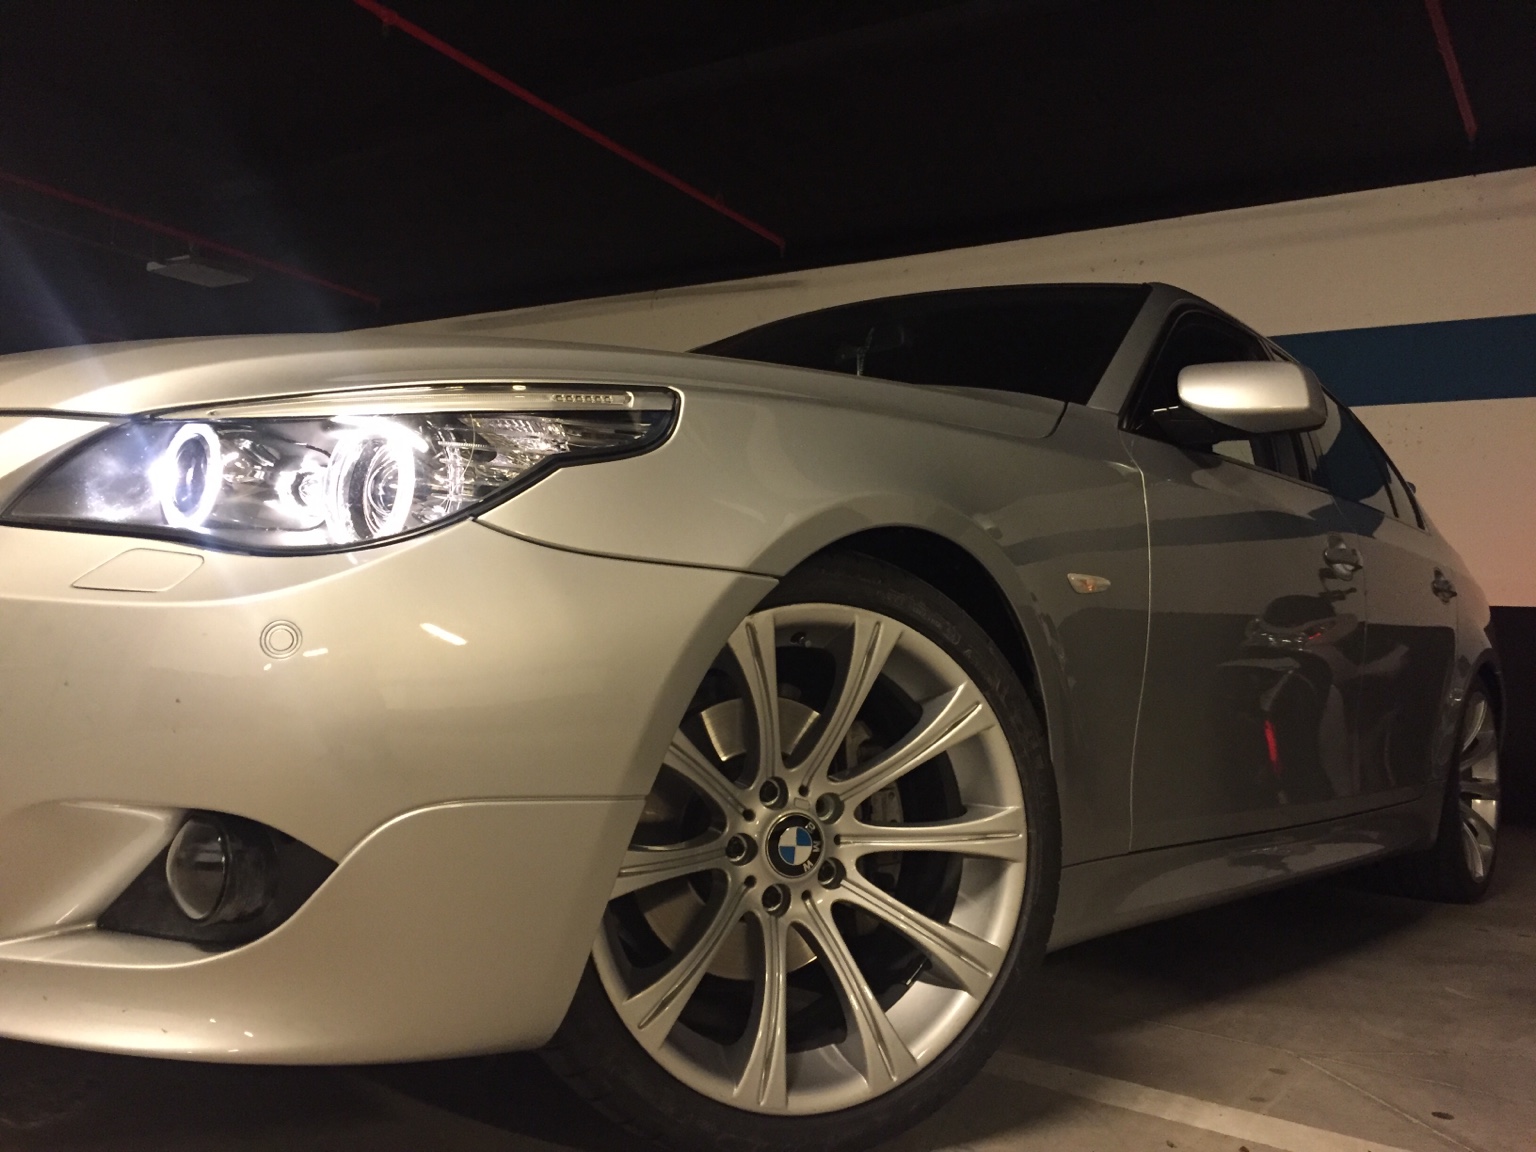 Duda - Llantas del M5 en e60 | BMW FAQ Club